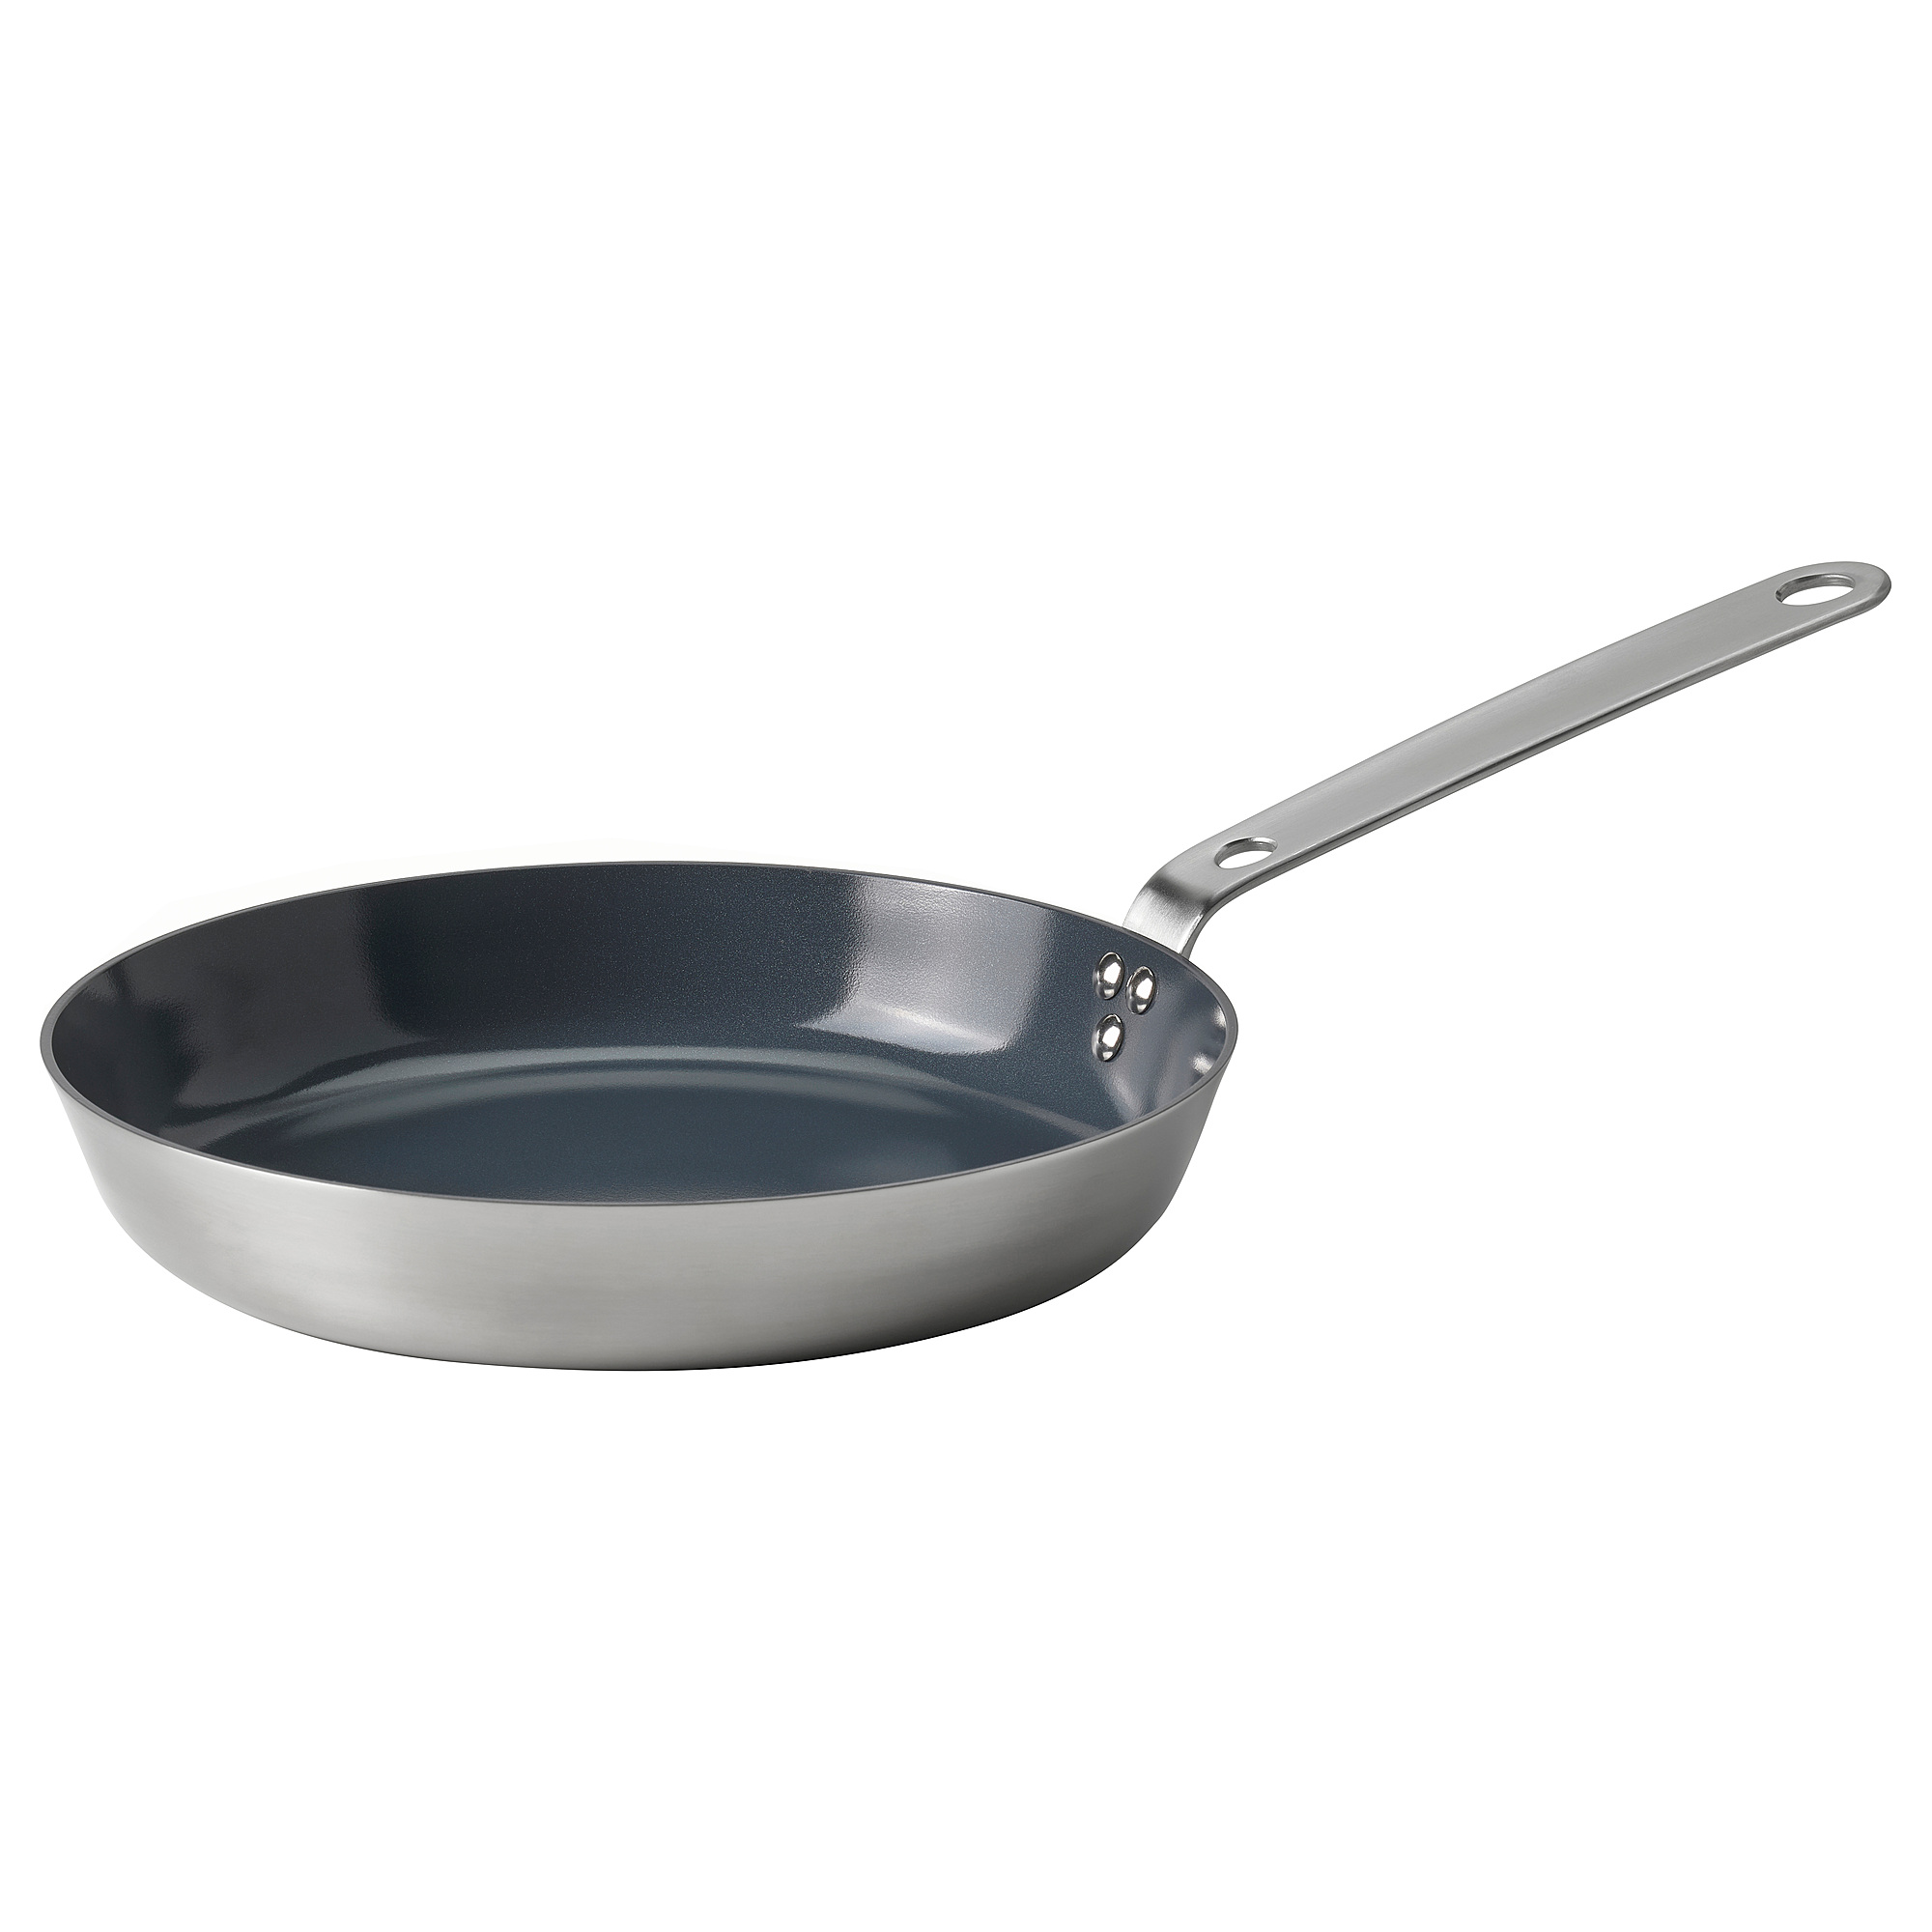 HEMKOMST frying pan